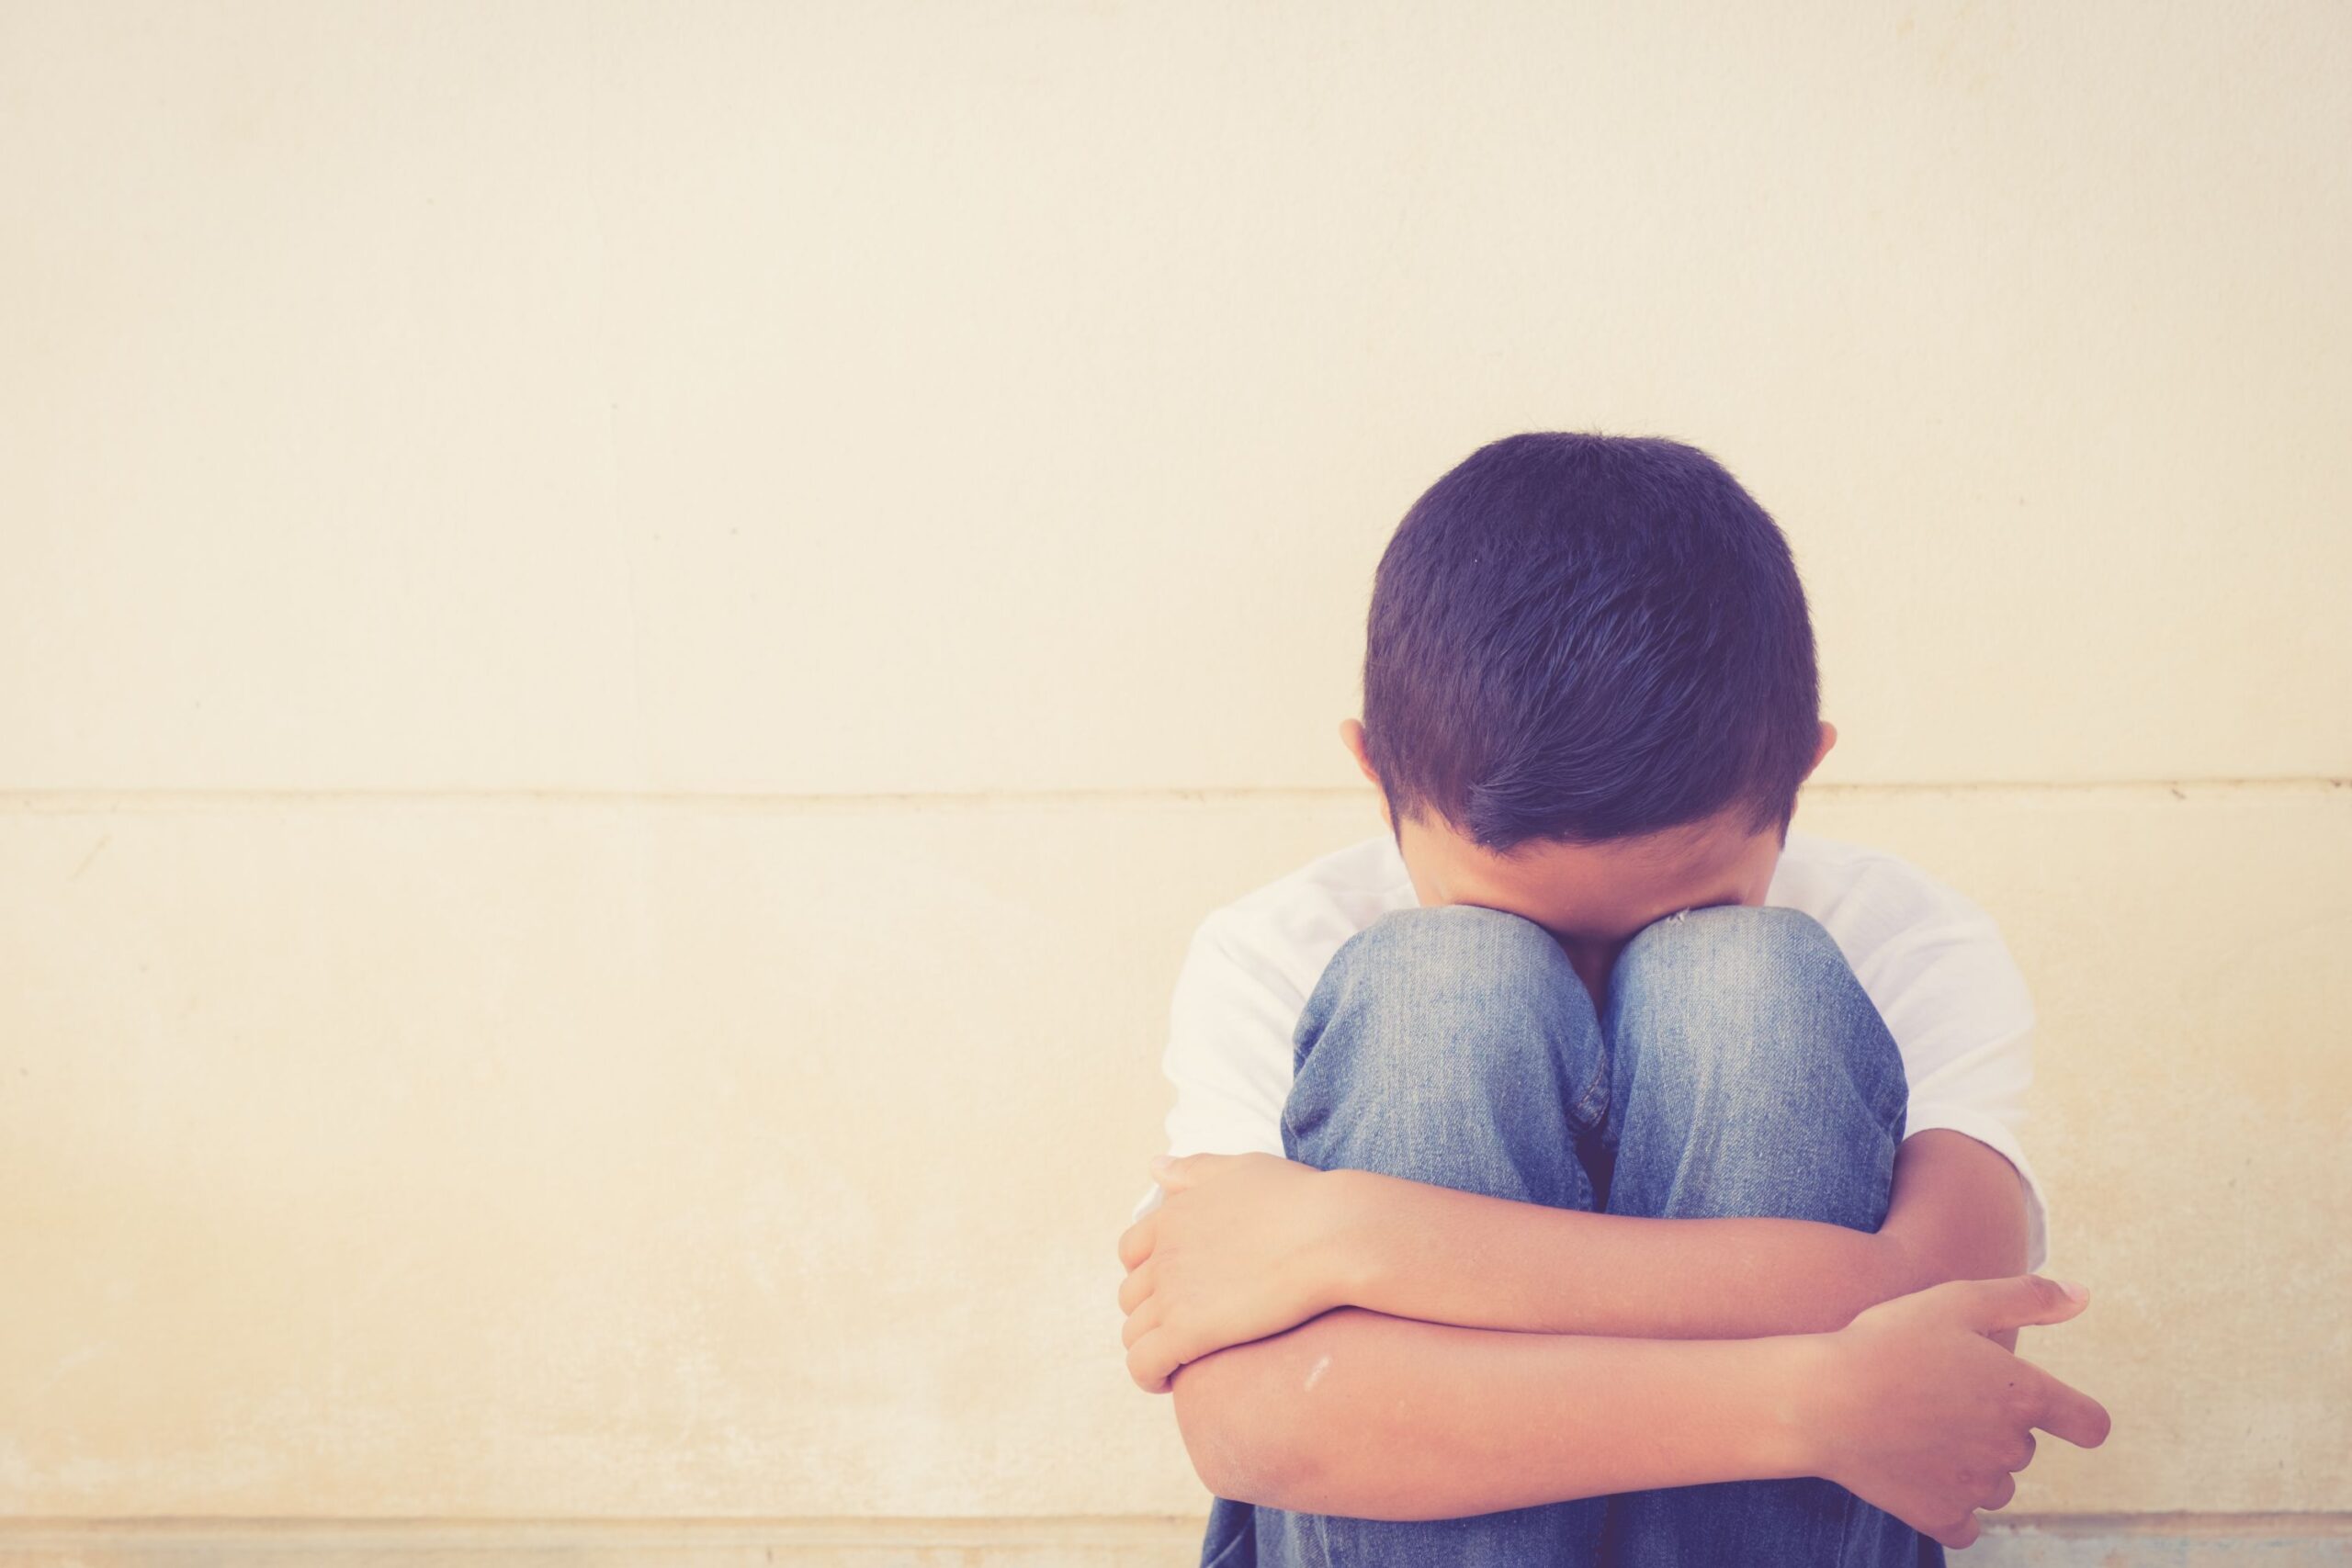 ¿Qué tipos de bullying suelen sufrir más los niños?